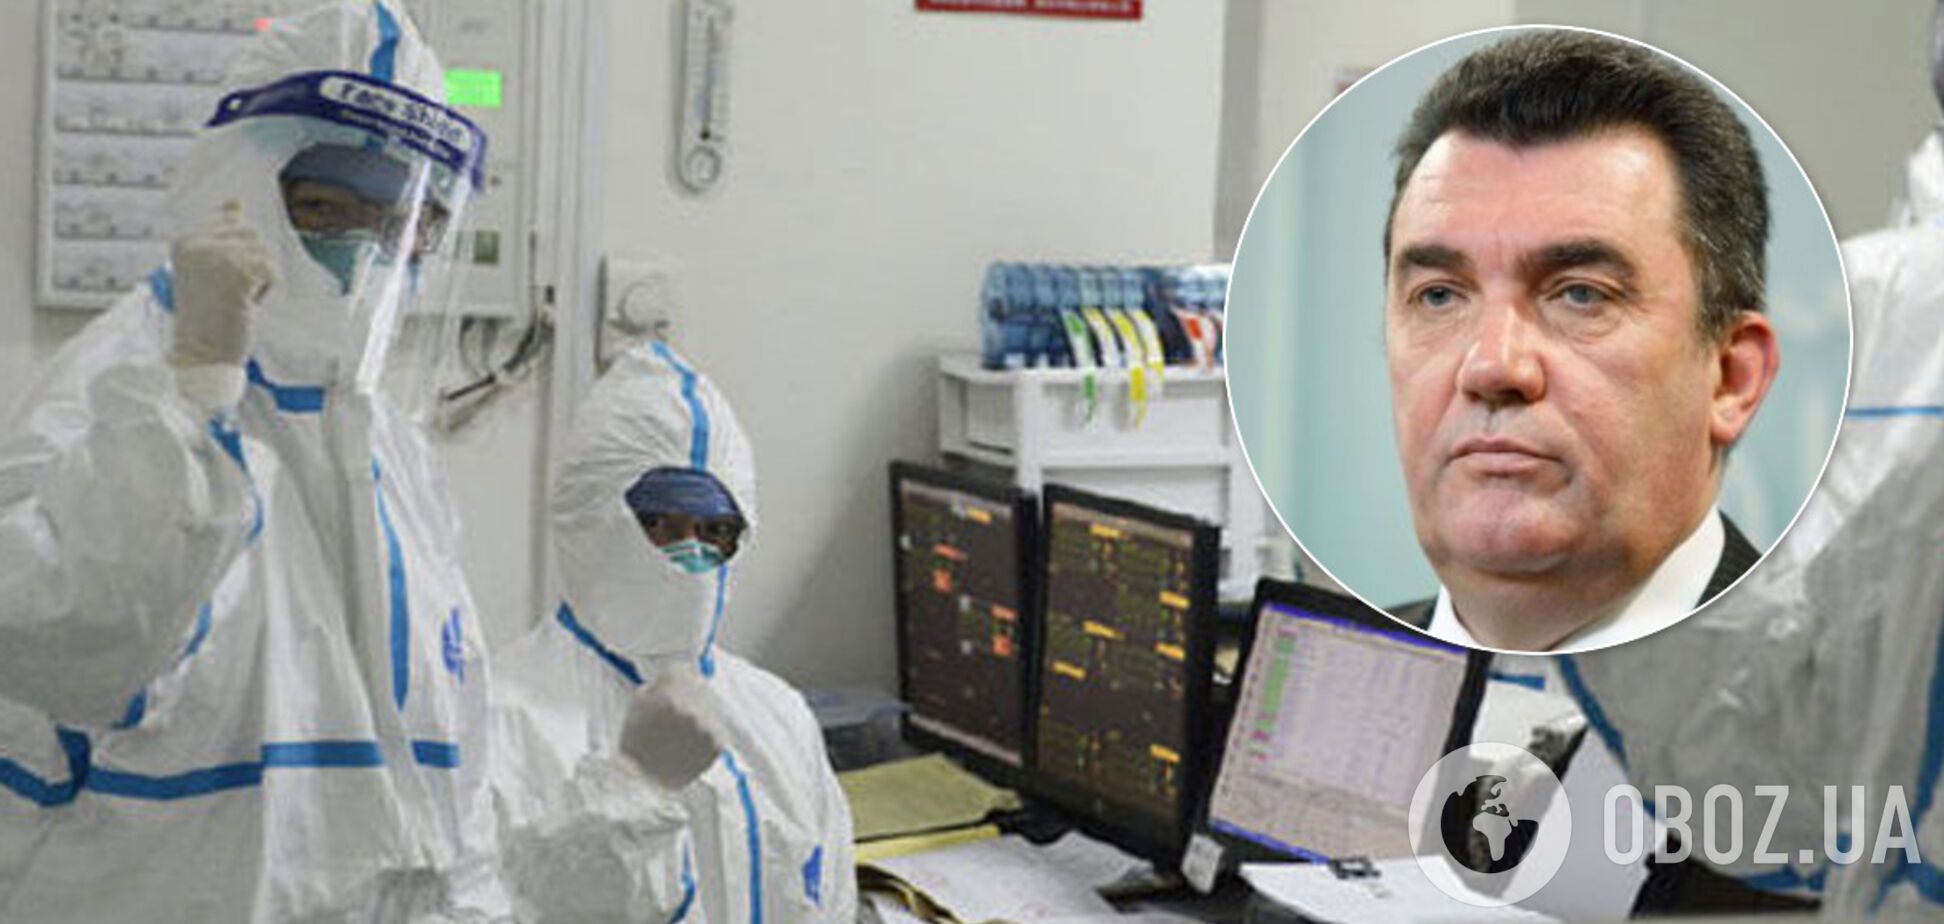 Данилов назвал источник эпидемии коронавируса в Китае